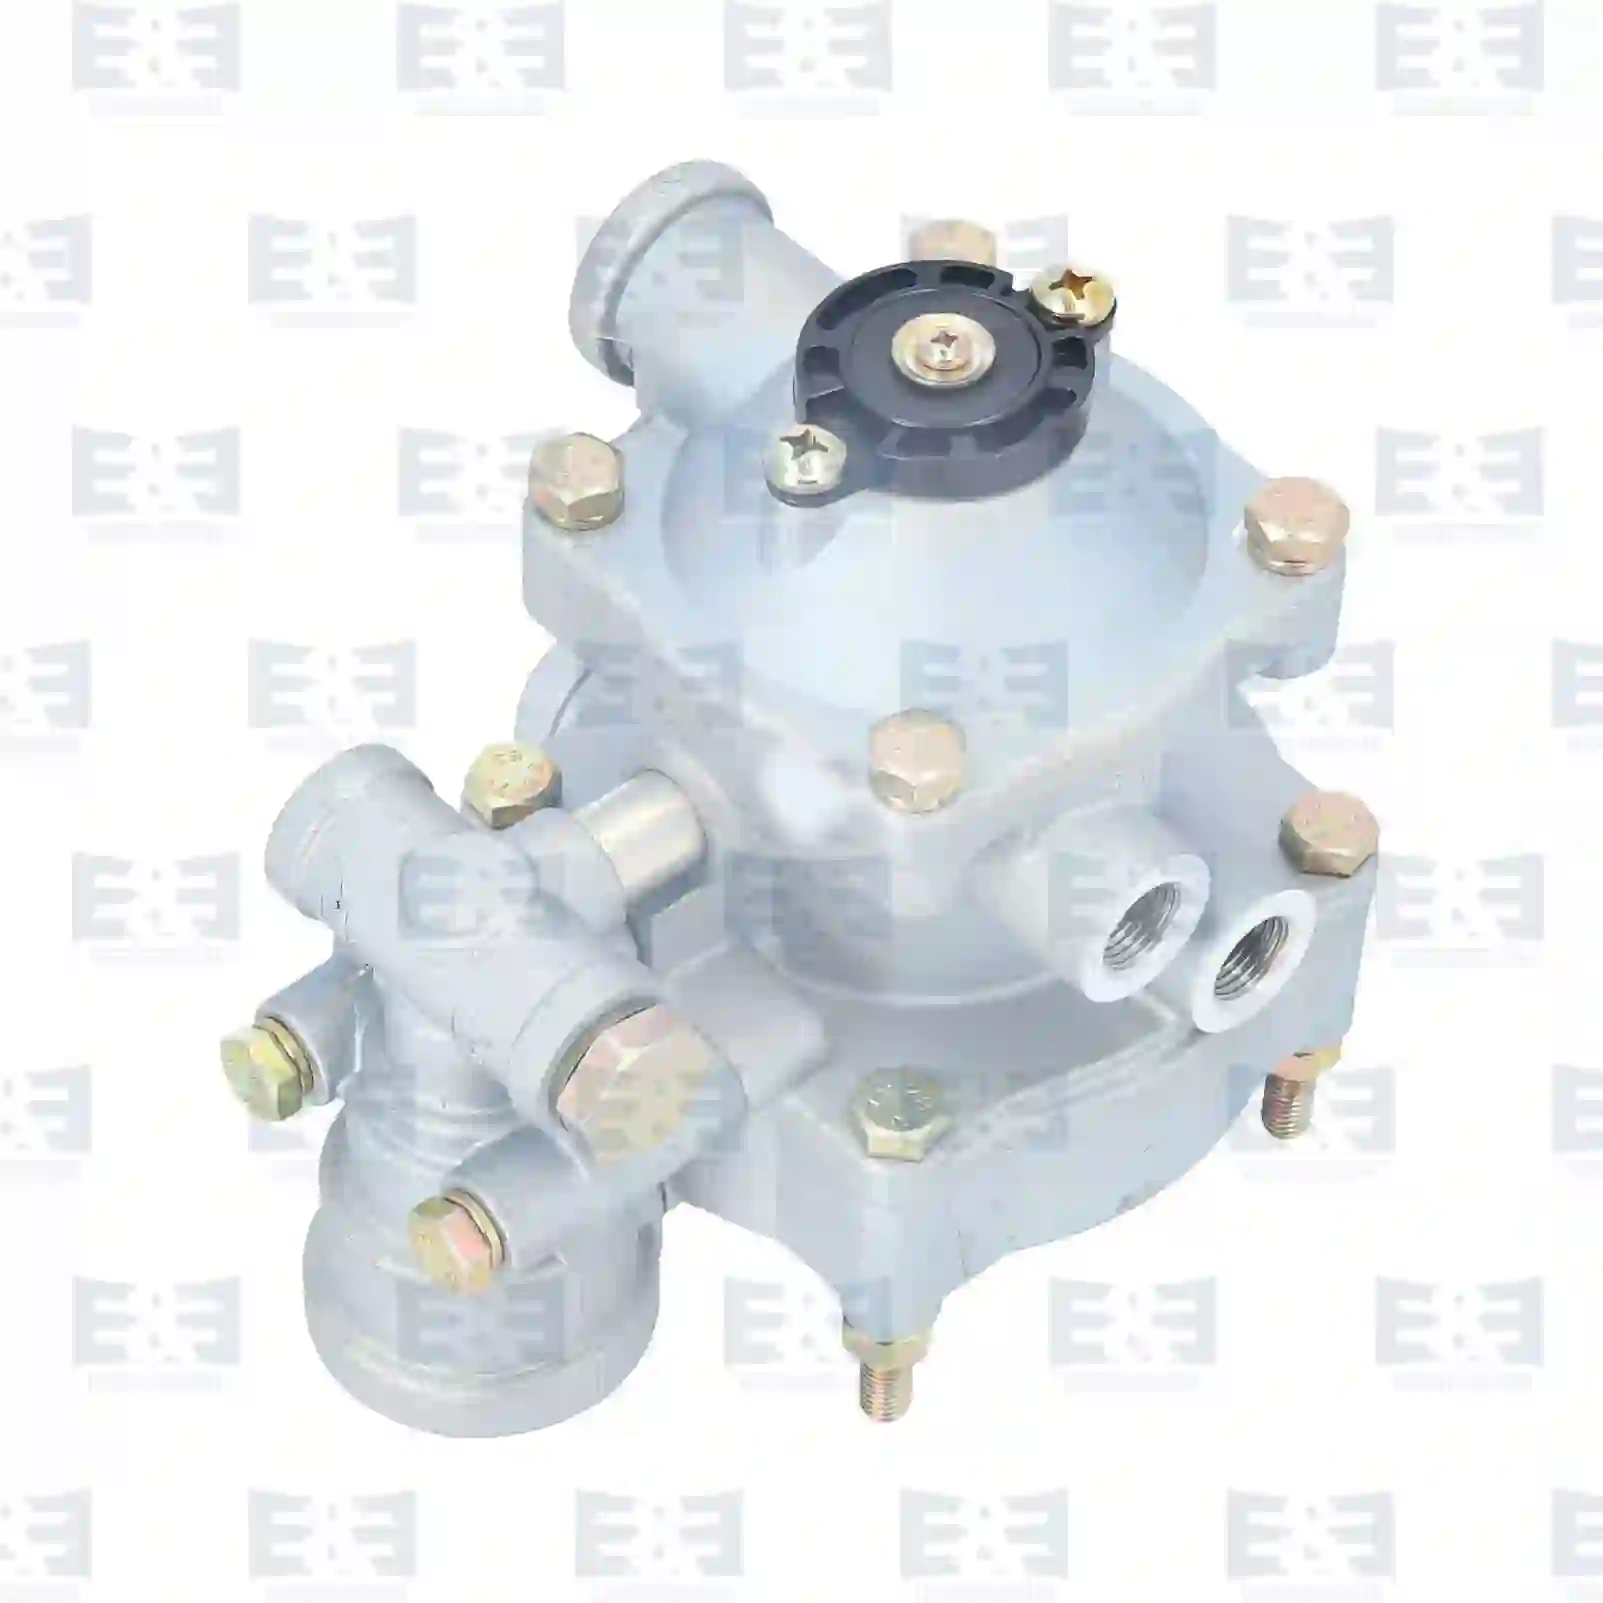  Trailer control valve || E&E Truck Spare Parts | Truck Spare Parts, Auotomotive Spare Parts